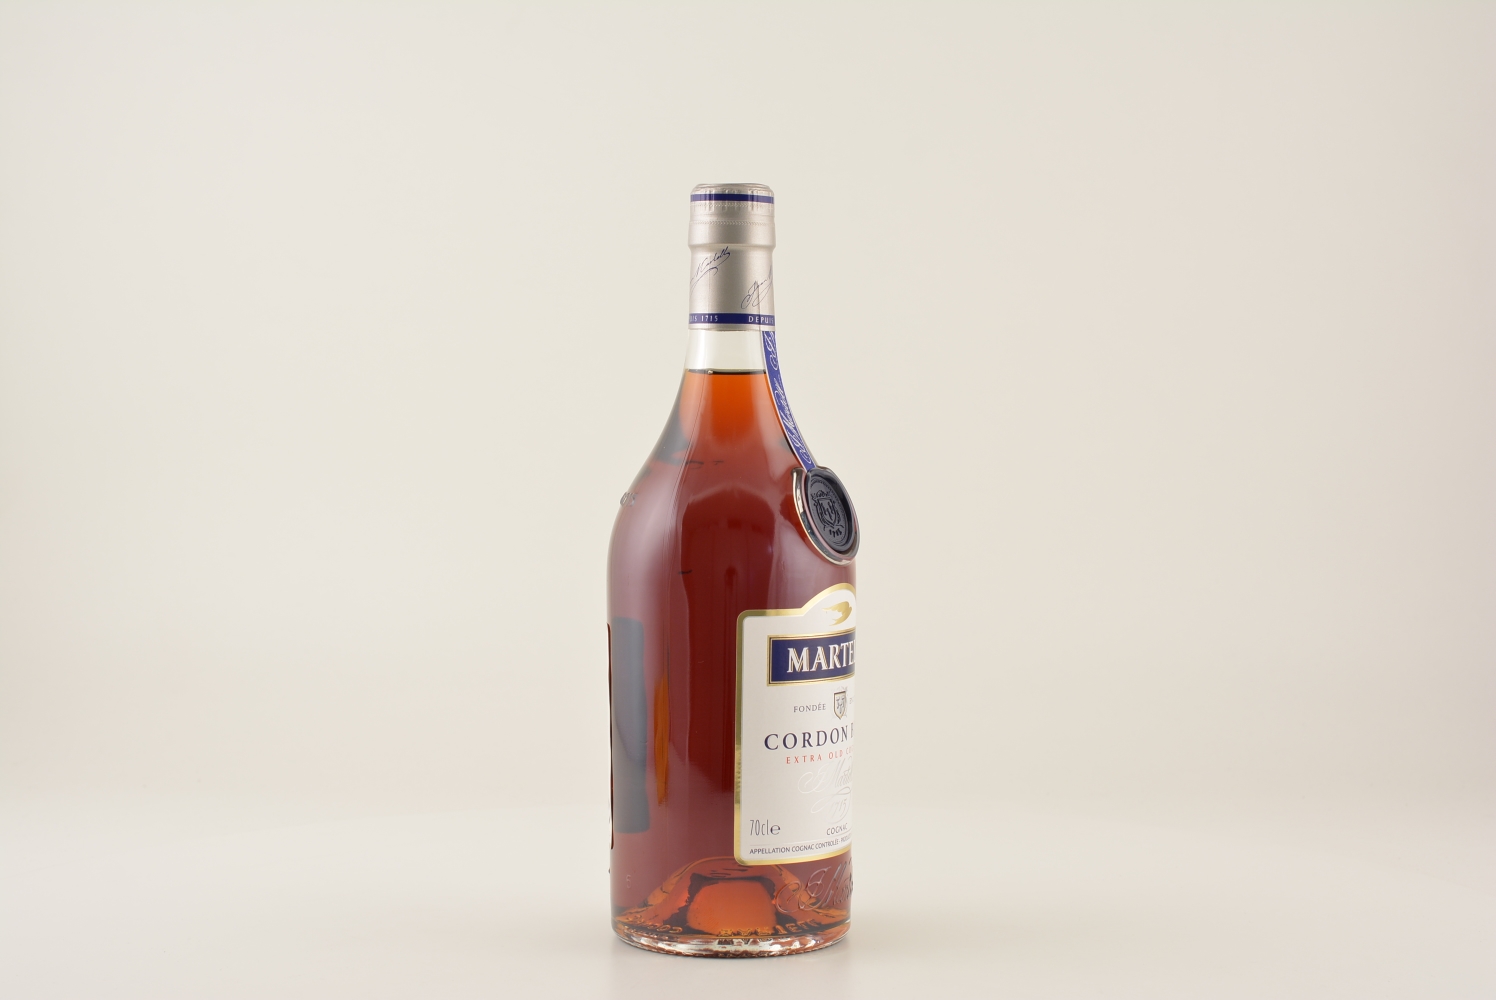 Martell Cognac Cordon Bleu XO 40% 0,7l